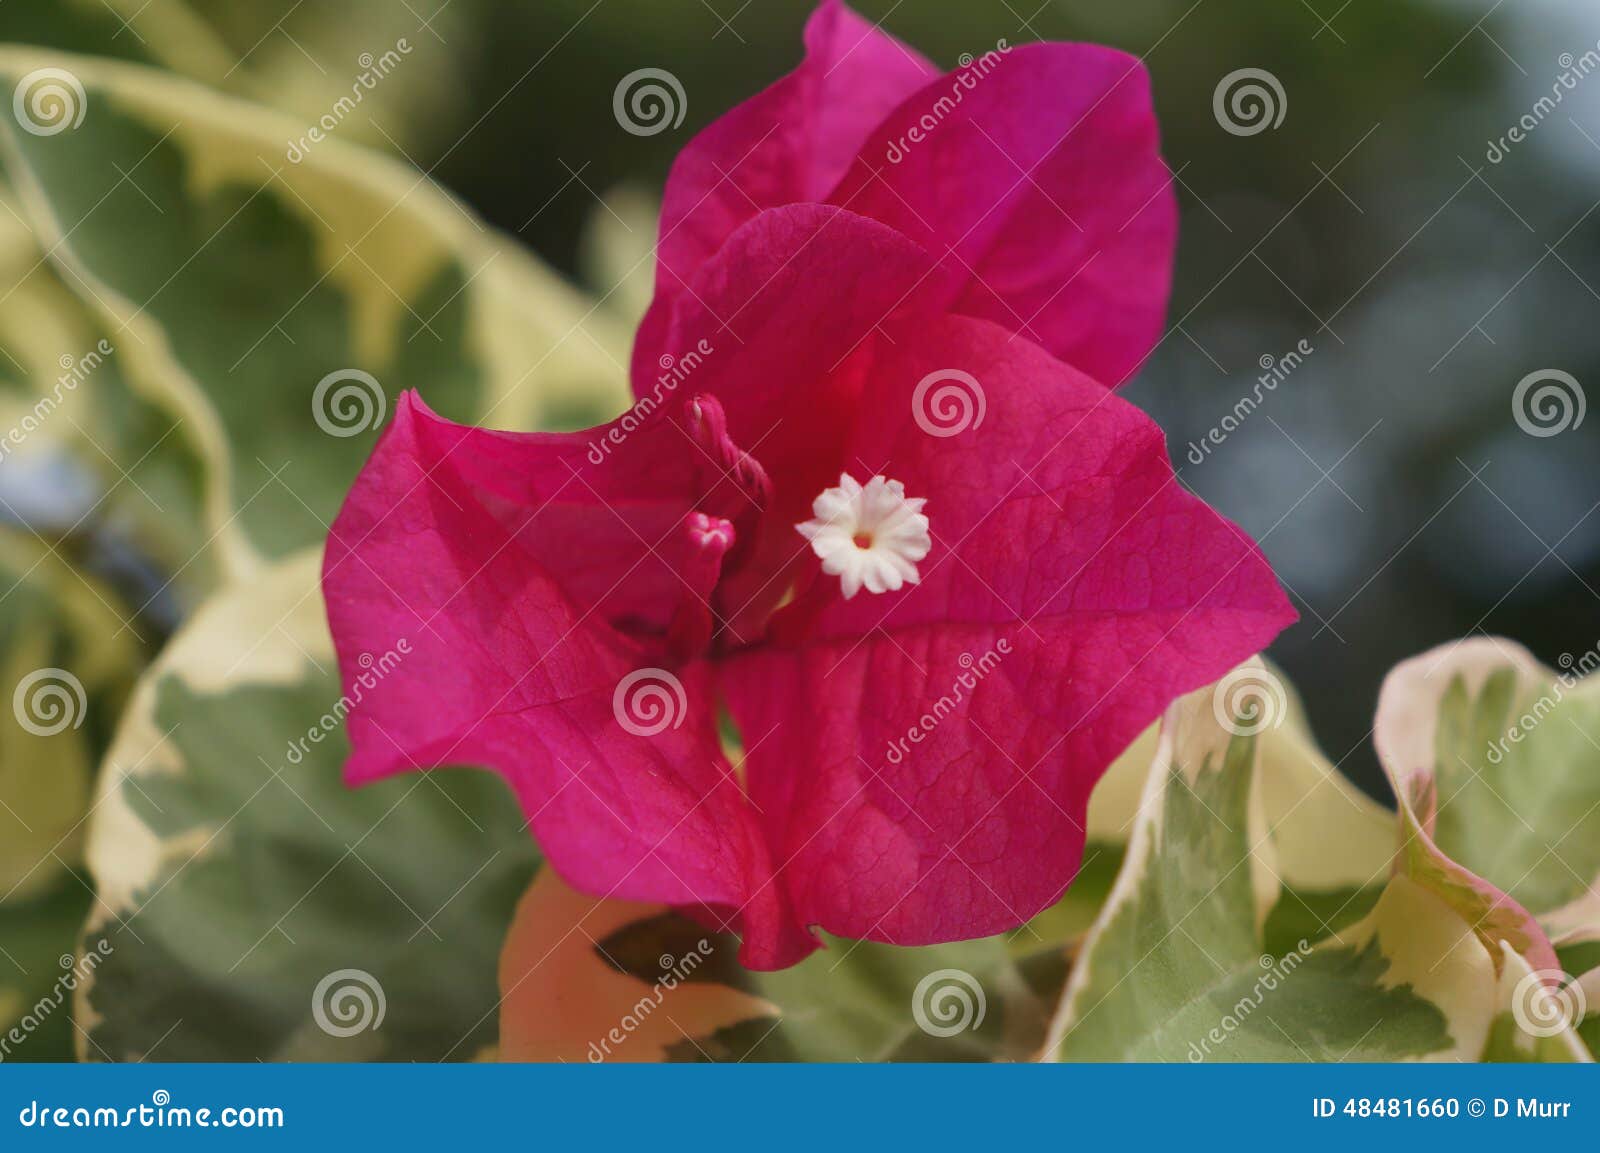 beautiful red hawaiian island flower